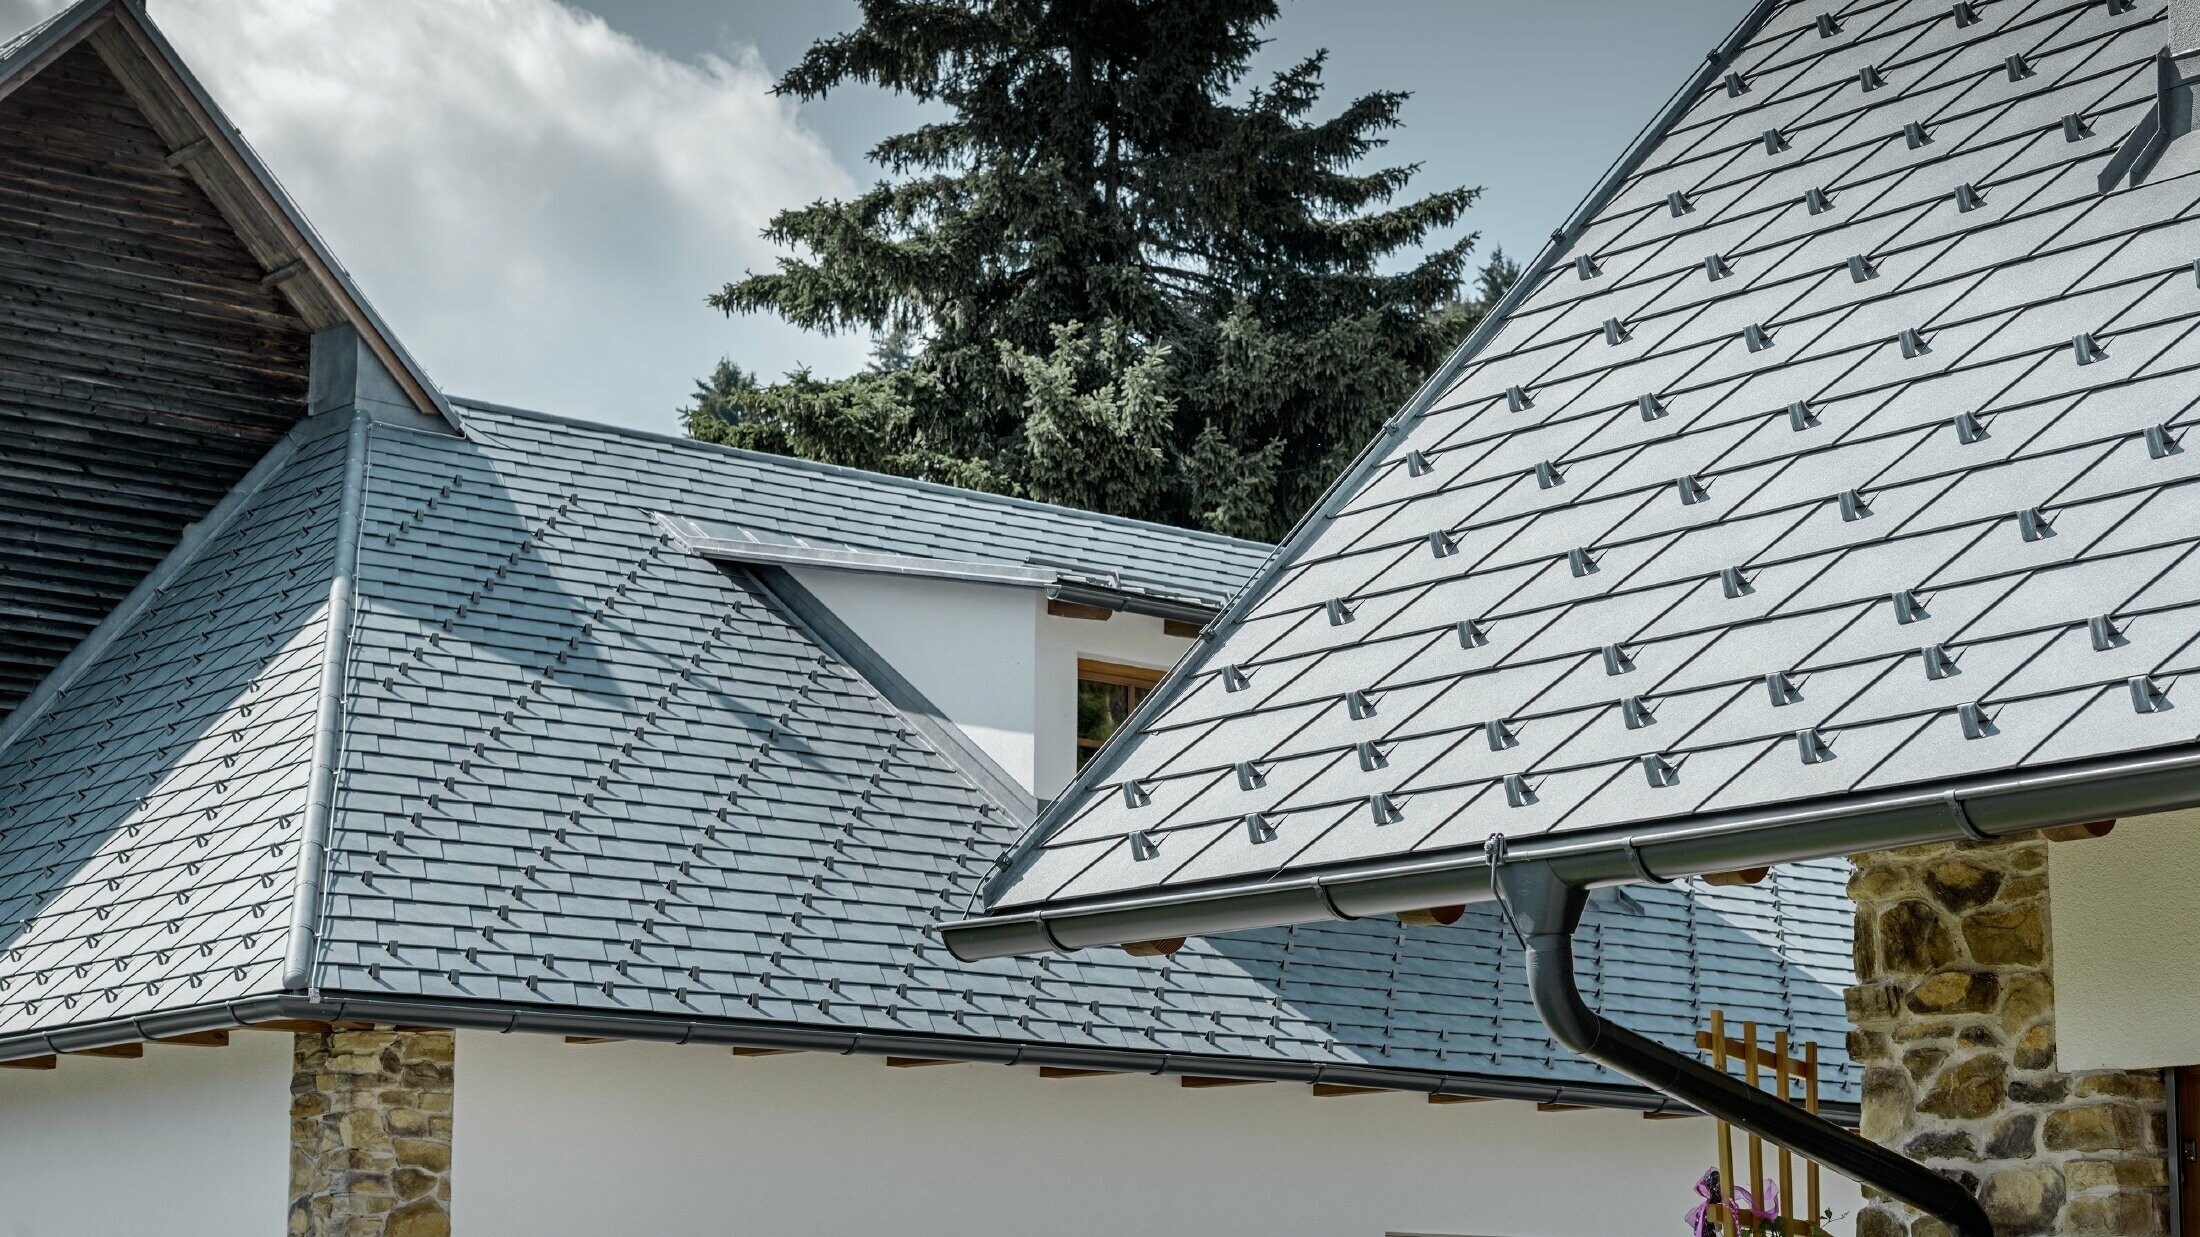 Detailopname van een aluminium dakbedekking van PREFA; dakschindel in steengrijs met de aluminium dakgoot in antraciet van PREFA; op de achtergrond herkent men een dakkapel met lessenaarsdak met staand felsdak. De gevel is wit met ingewerkte steenelementen.